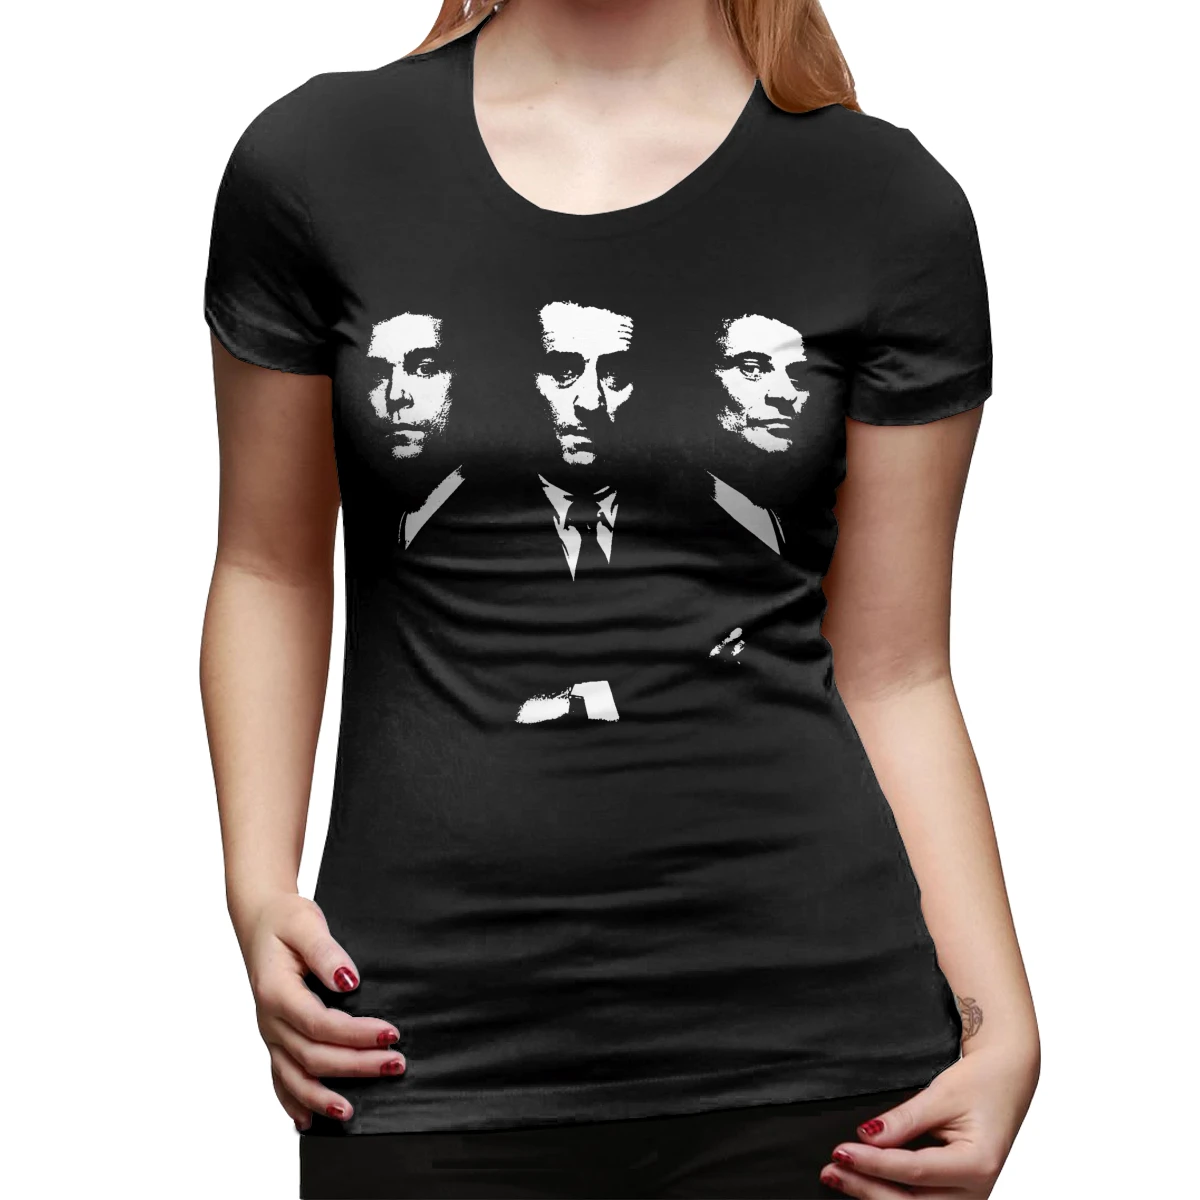 Goodfellas футболка 100 хлопок короткий рукав женская футболка трендовая уличная одежда женская футболка - Цвет: Черный